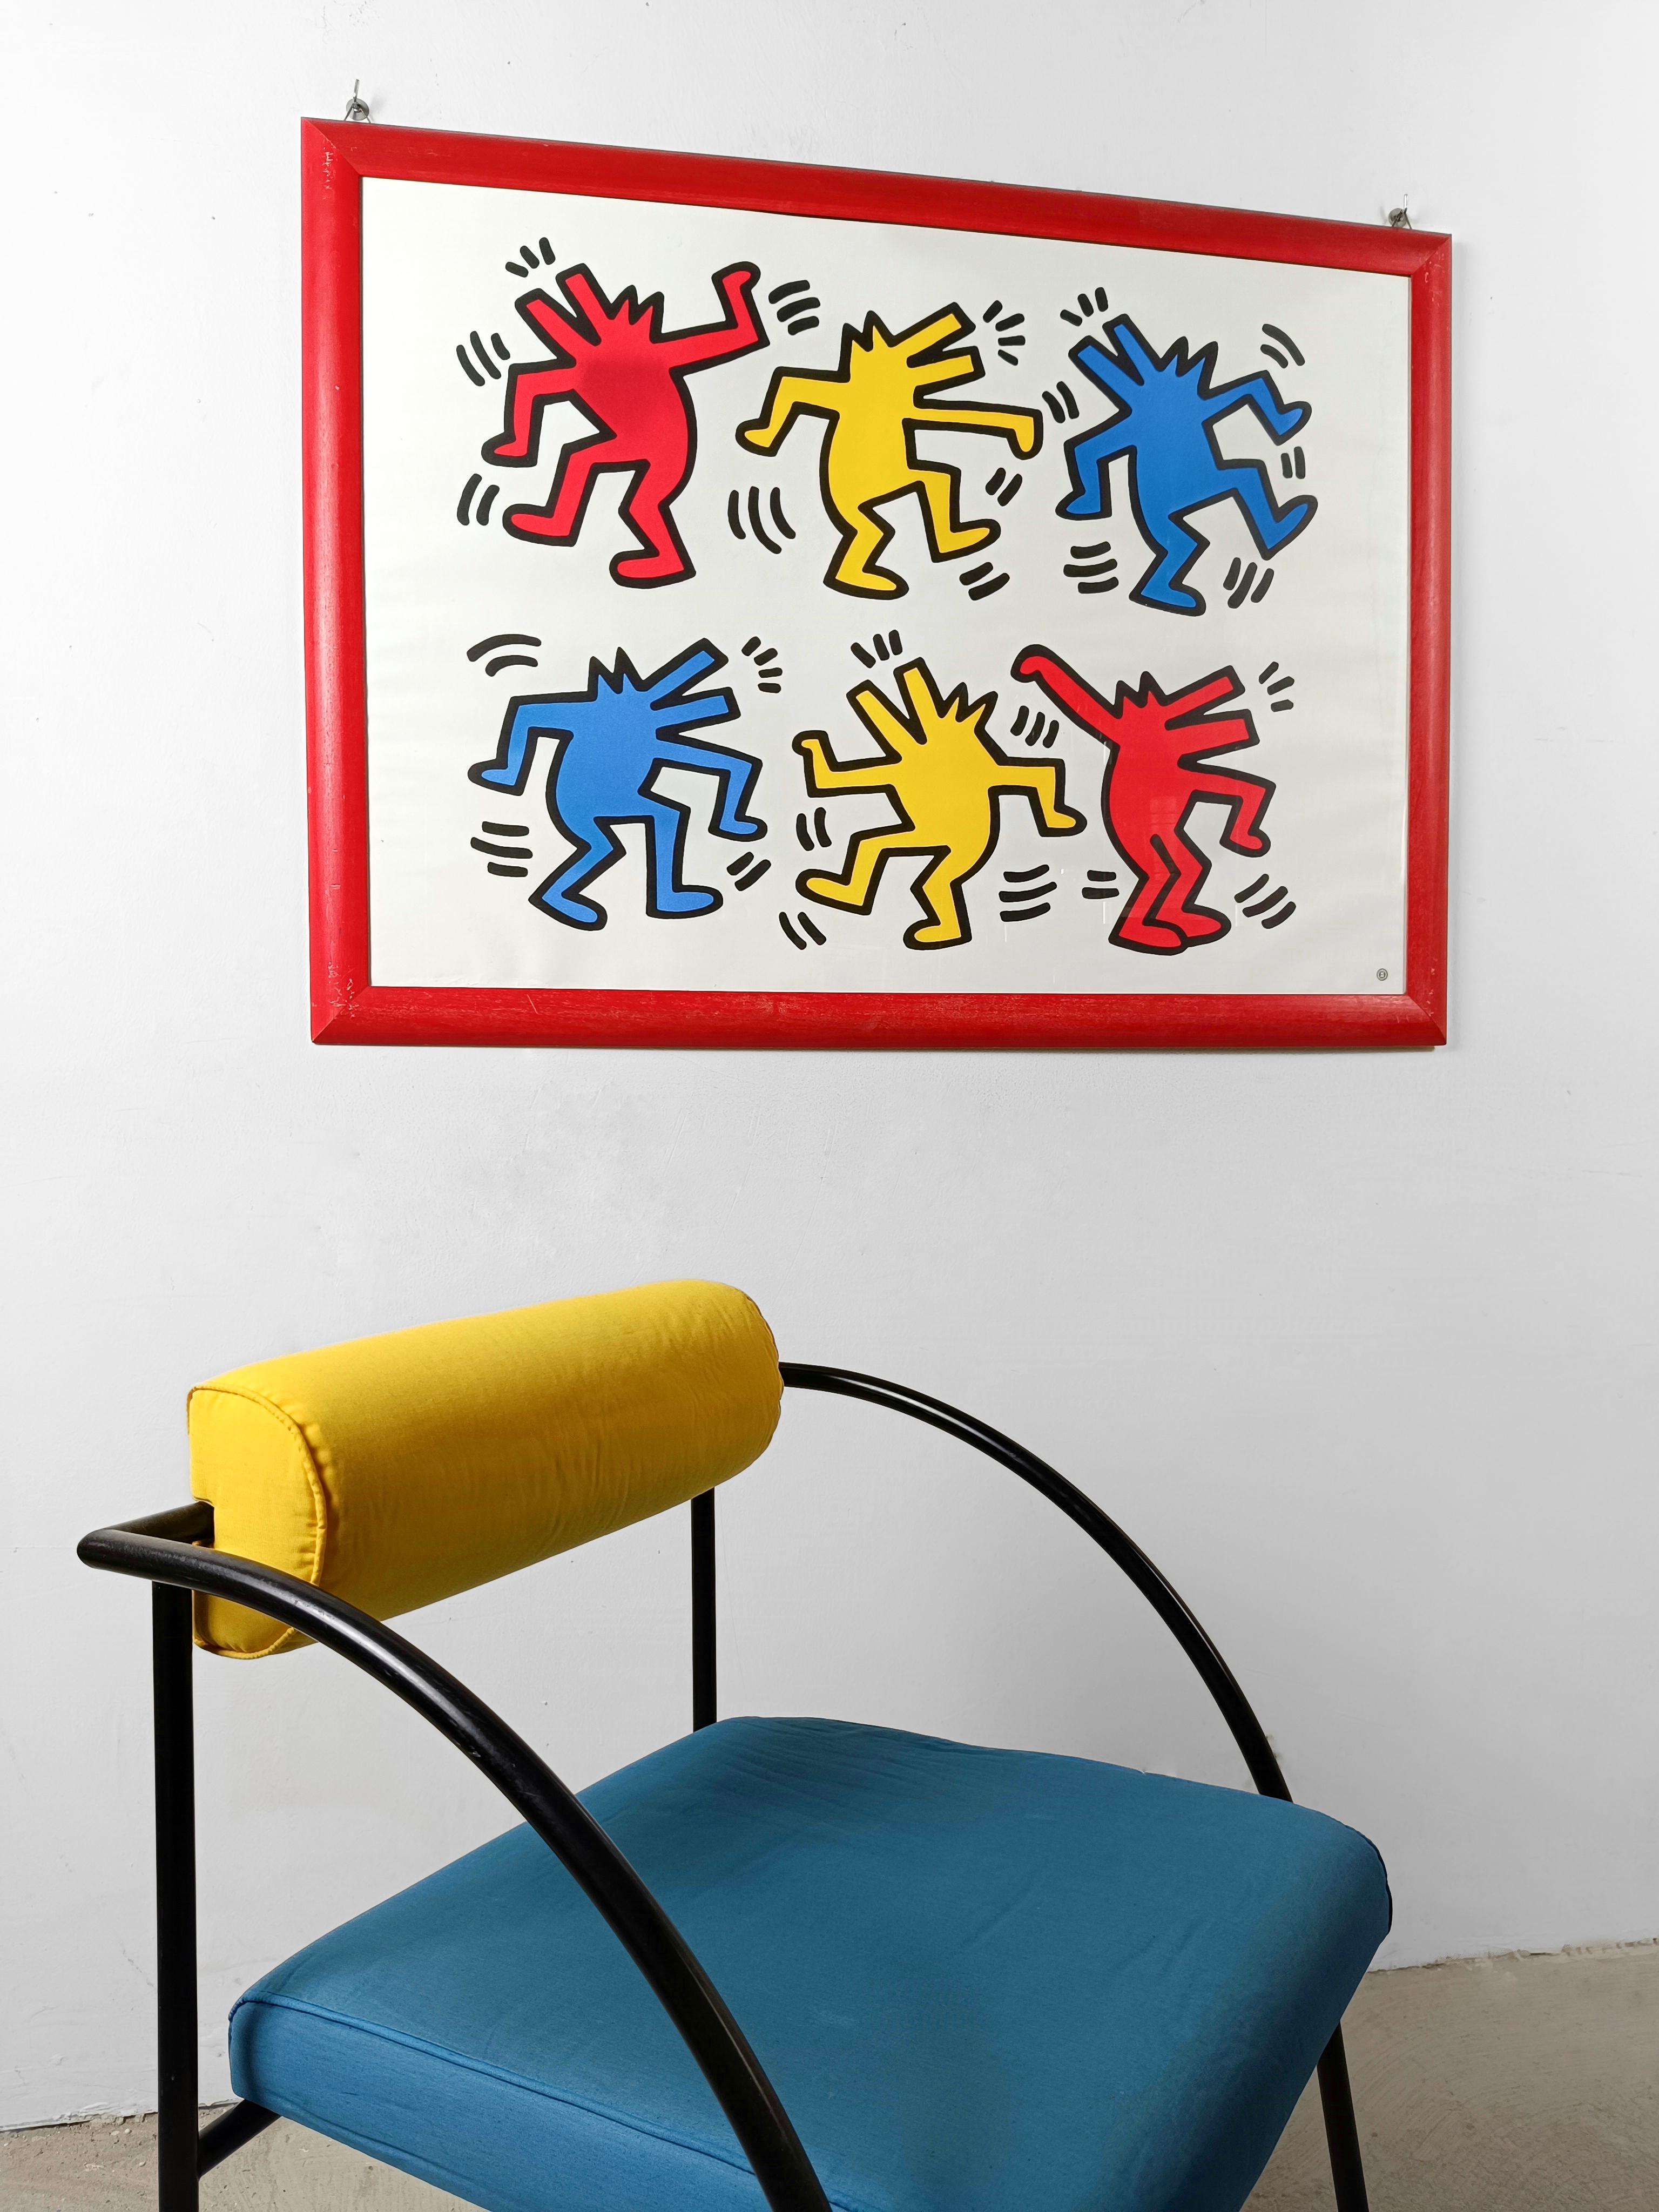 Grande affiche imprimée en offset 4 couleurs en France par Nouvelles Images S.A. autorisée, comme le montre le cachet, par la succession de Keith Haring.

Le thème reproduit sur cette affiche est 